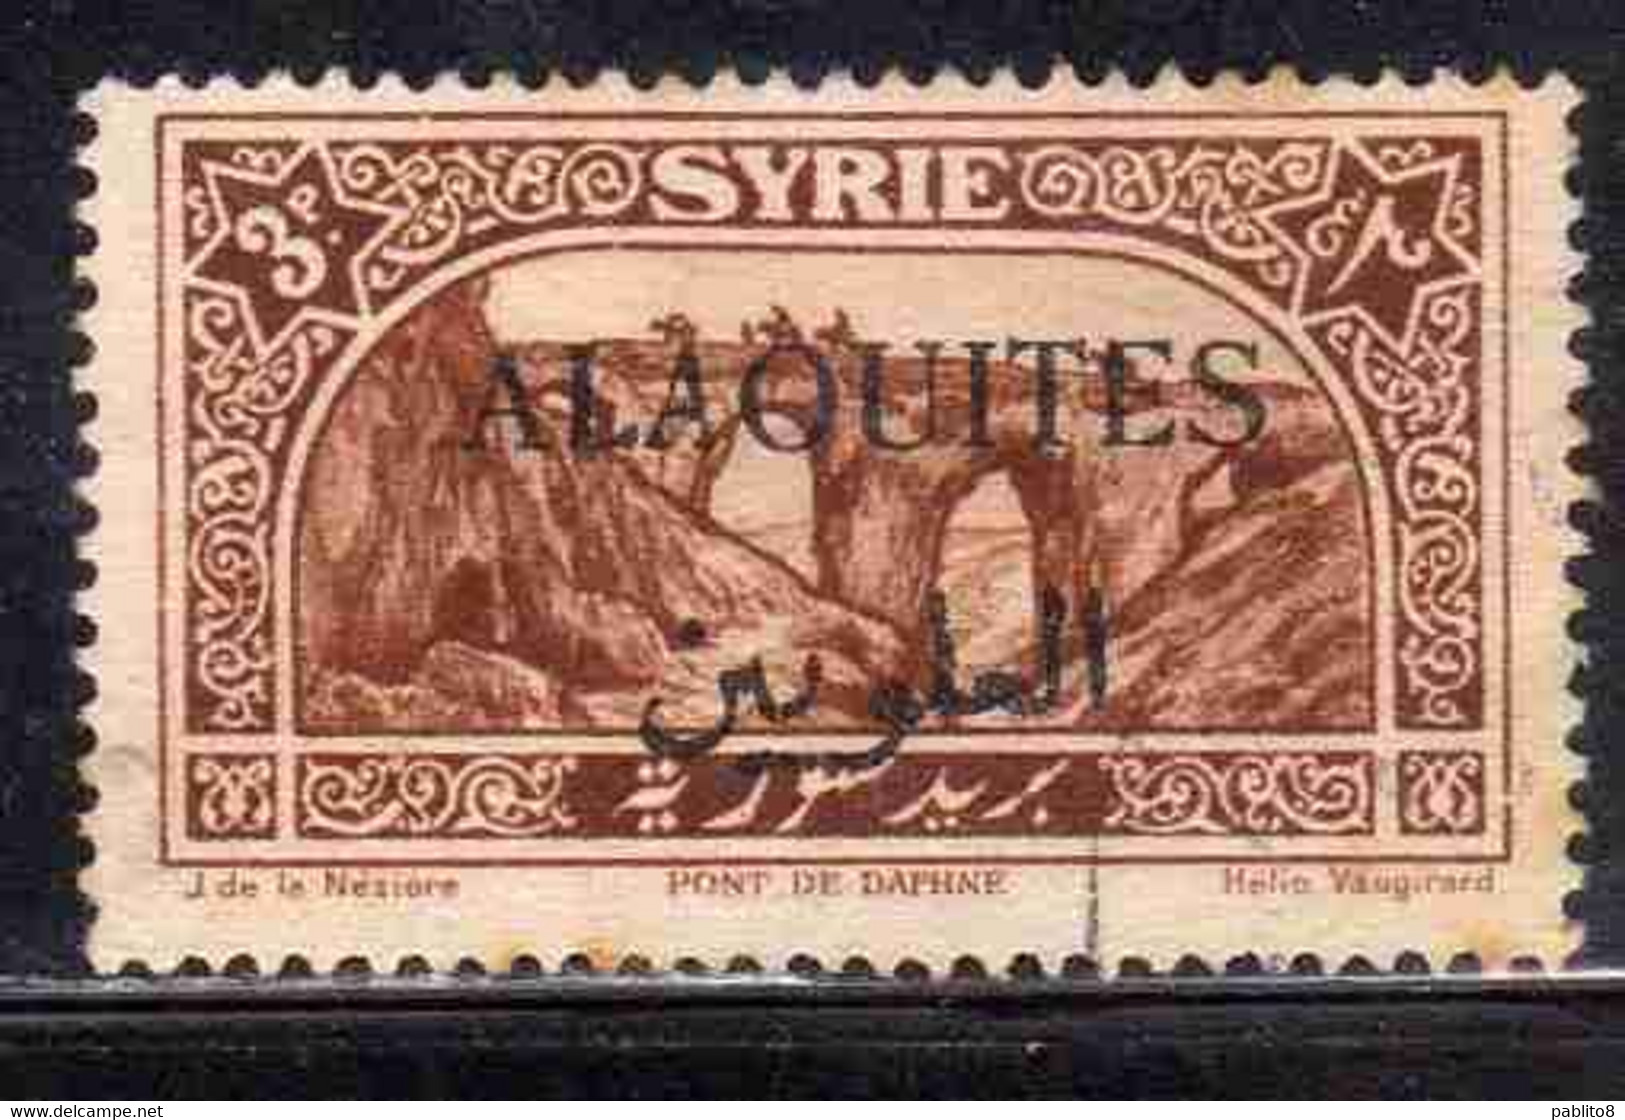 ALAOUITES SYRIA SIRIA ALAQUITES 1925 BRIDGE OF DAPHNE 3p USED USATO OBLITERE' - Usati